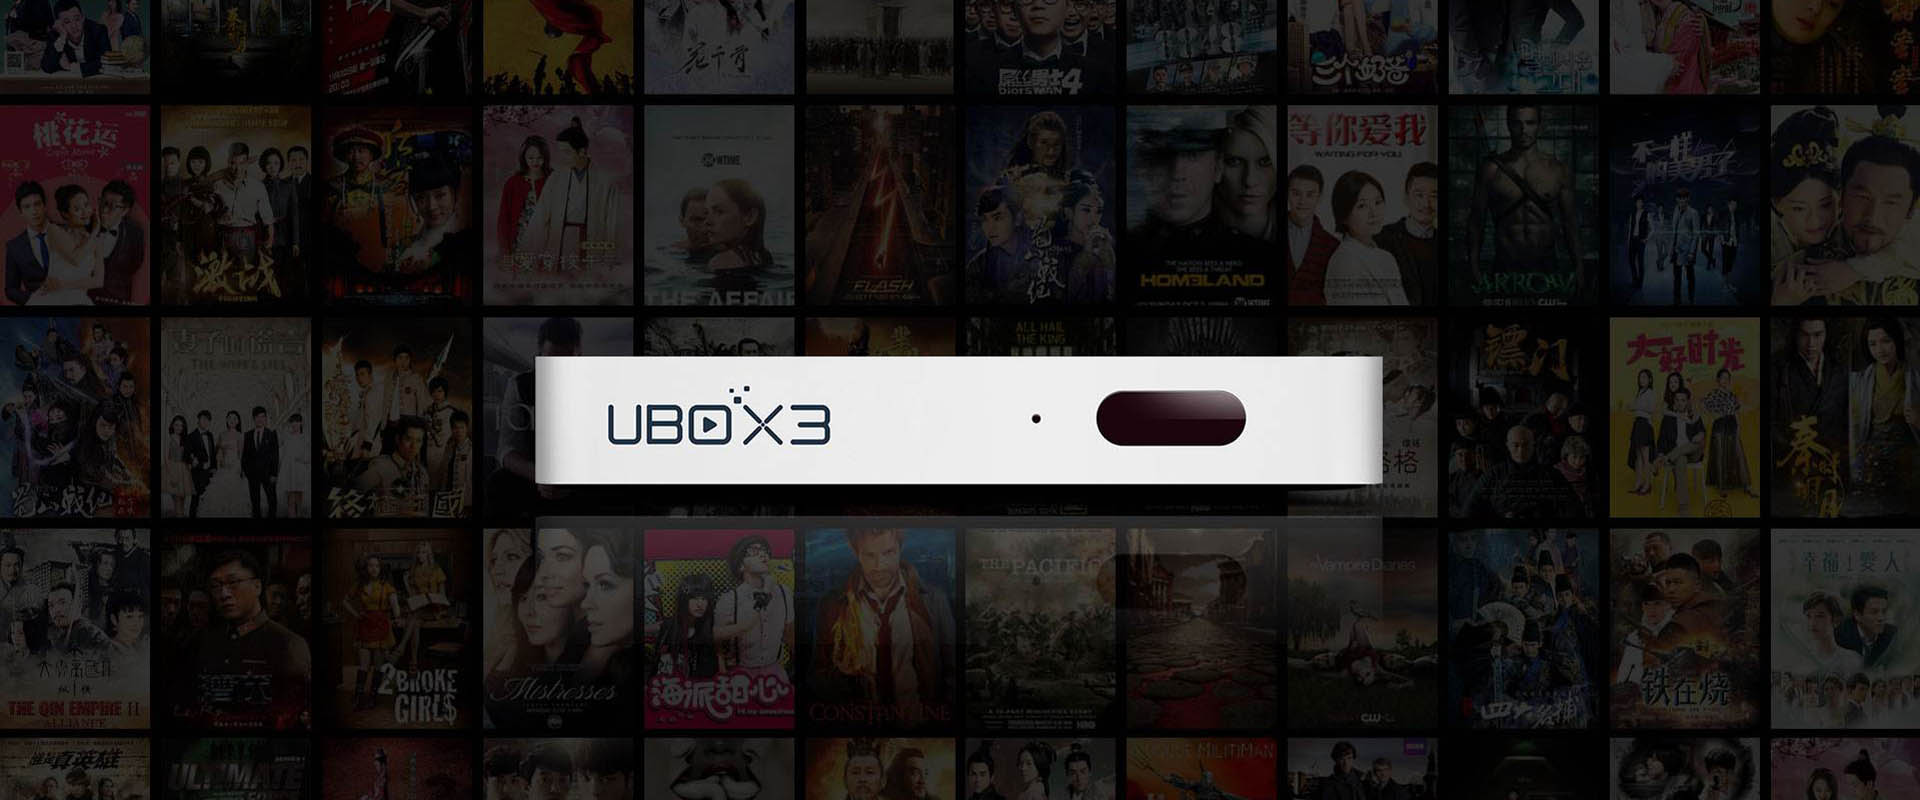 TV Box UBOX 3 - Bekijk gratis tv-programma's van het vasteland van China